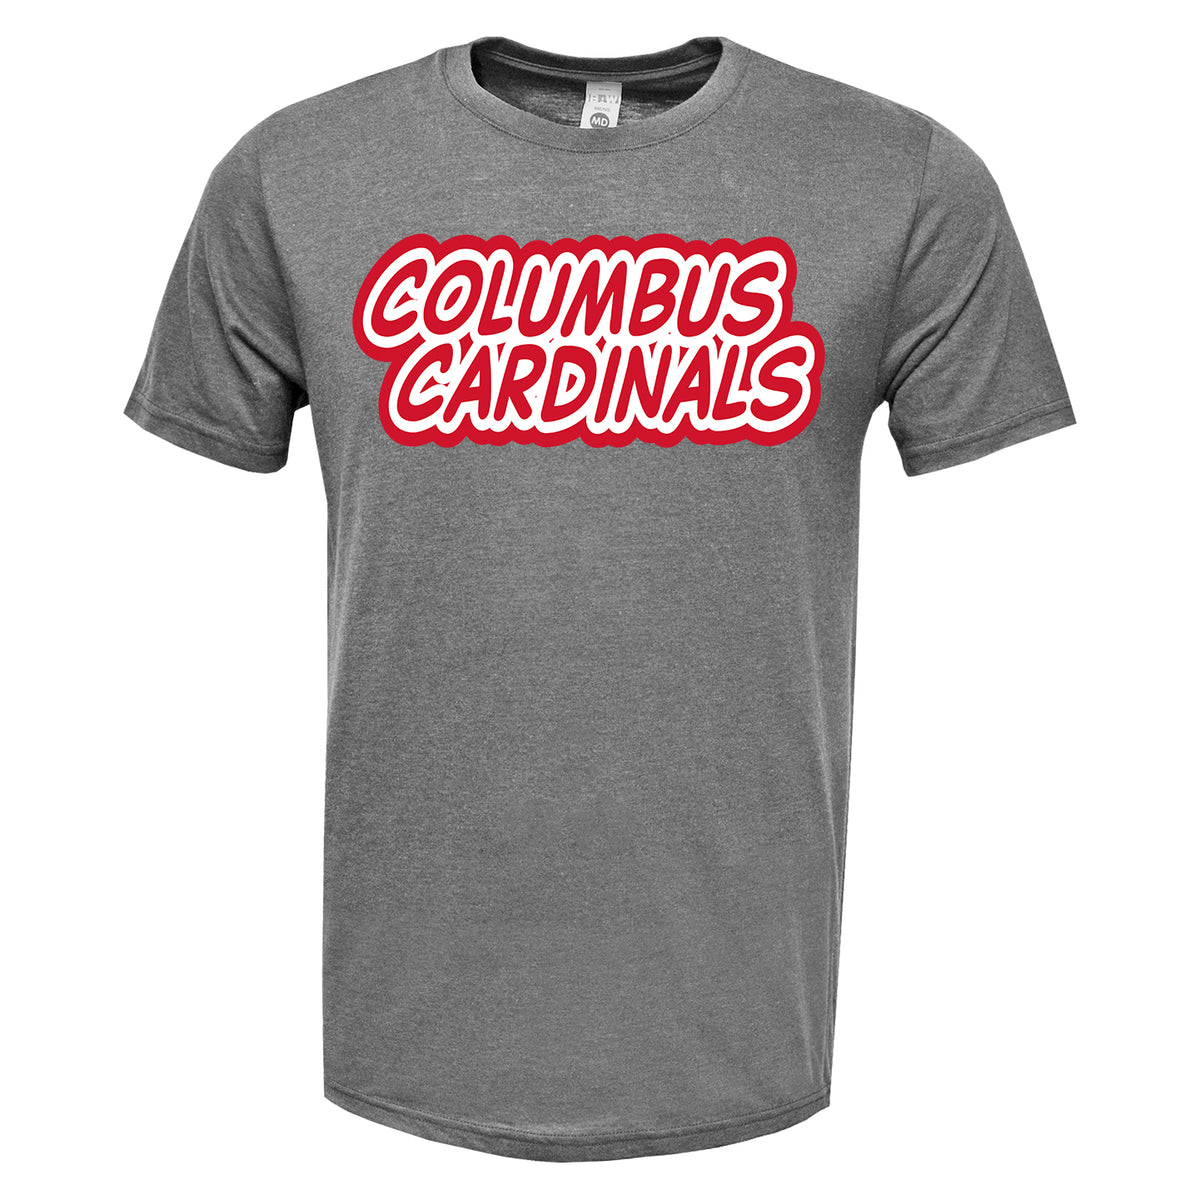 MindsparkCreative Columbus Cardinals Long Sleeve T-Shirt